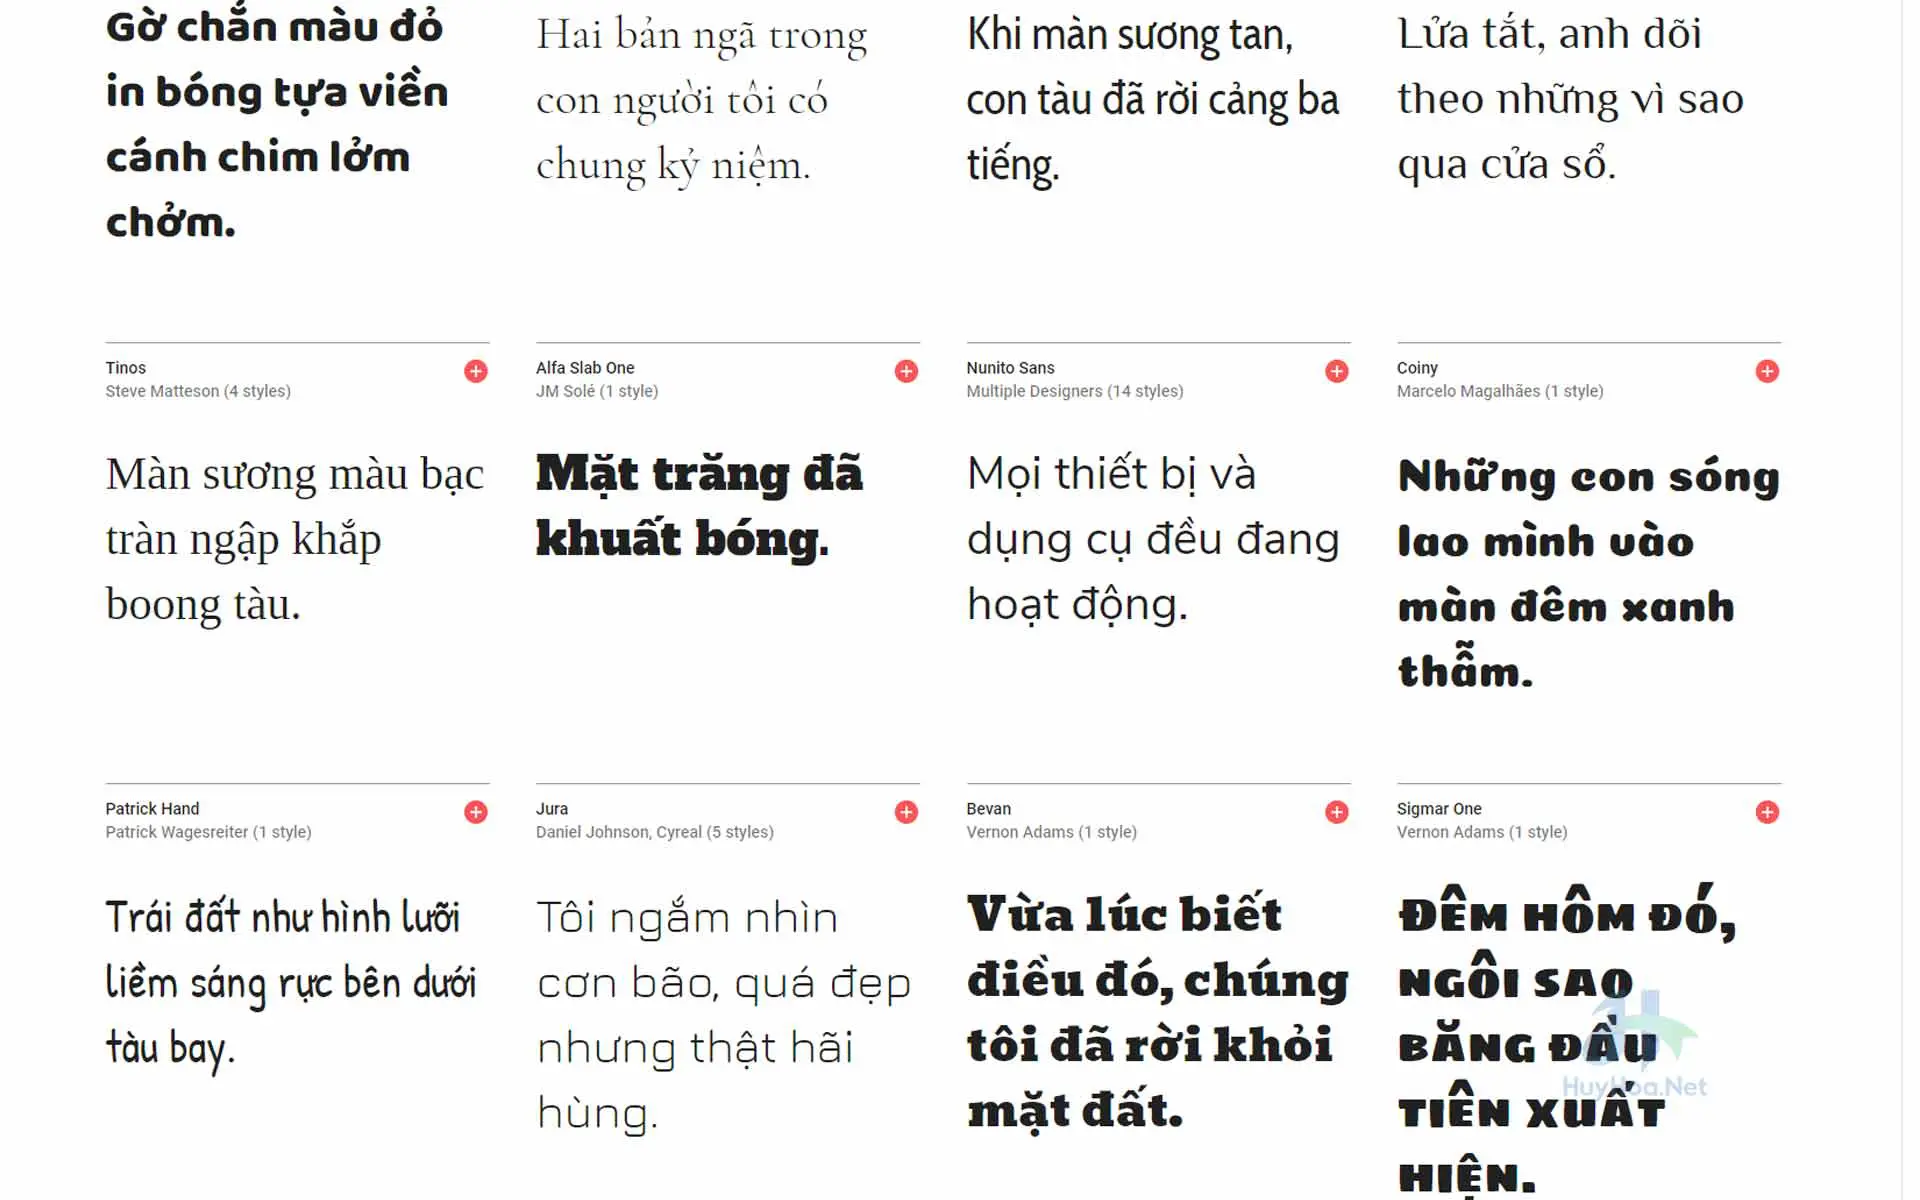 Ngày nay, việc thiết kế phông chữ đẹp cho ngôn ngữ Việt đã trở nên dễ dàng hơn bao giờ hết. Các nhà thiết kế đã phát triển ra nhiều font chữ đẹp Tiếng Việt, giúp cho các dự án thiết kế trở nên đa dạng và tinh tế hơn bao giờ hết. Chỉ cần sử dụng các font chữ đẹp này, bạn sẽ có được những kết quả thiết kế ấn tượng và chuyên nghiệp.